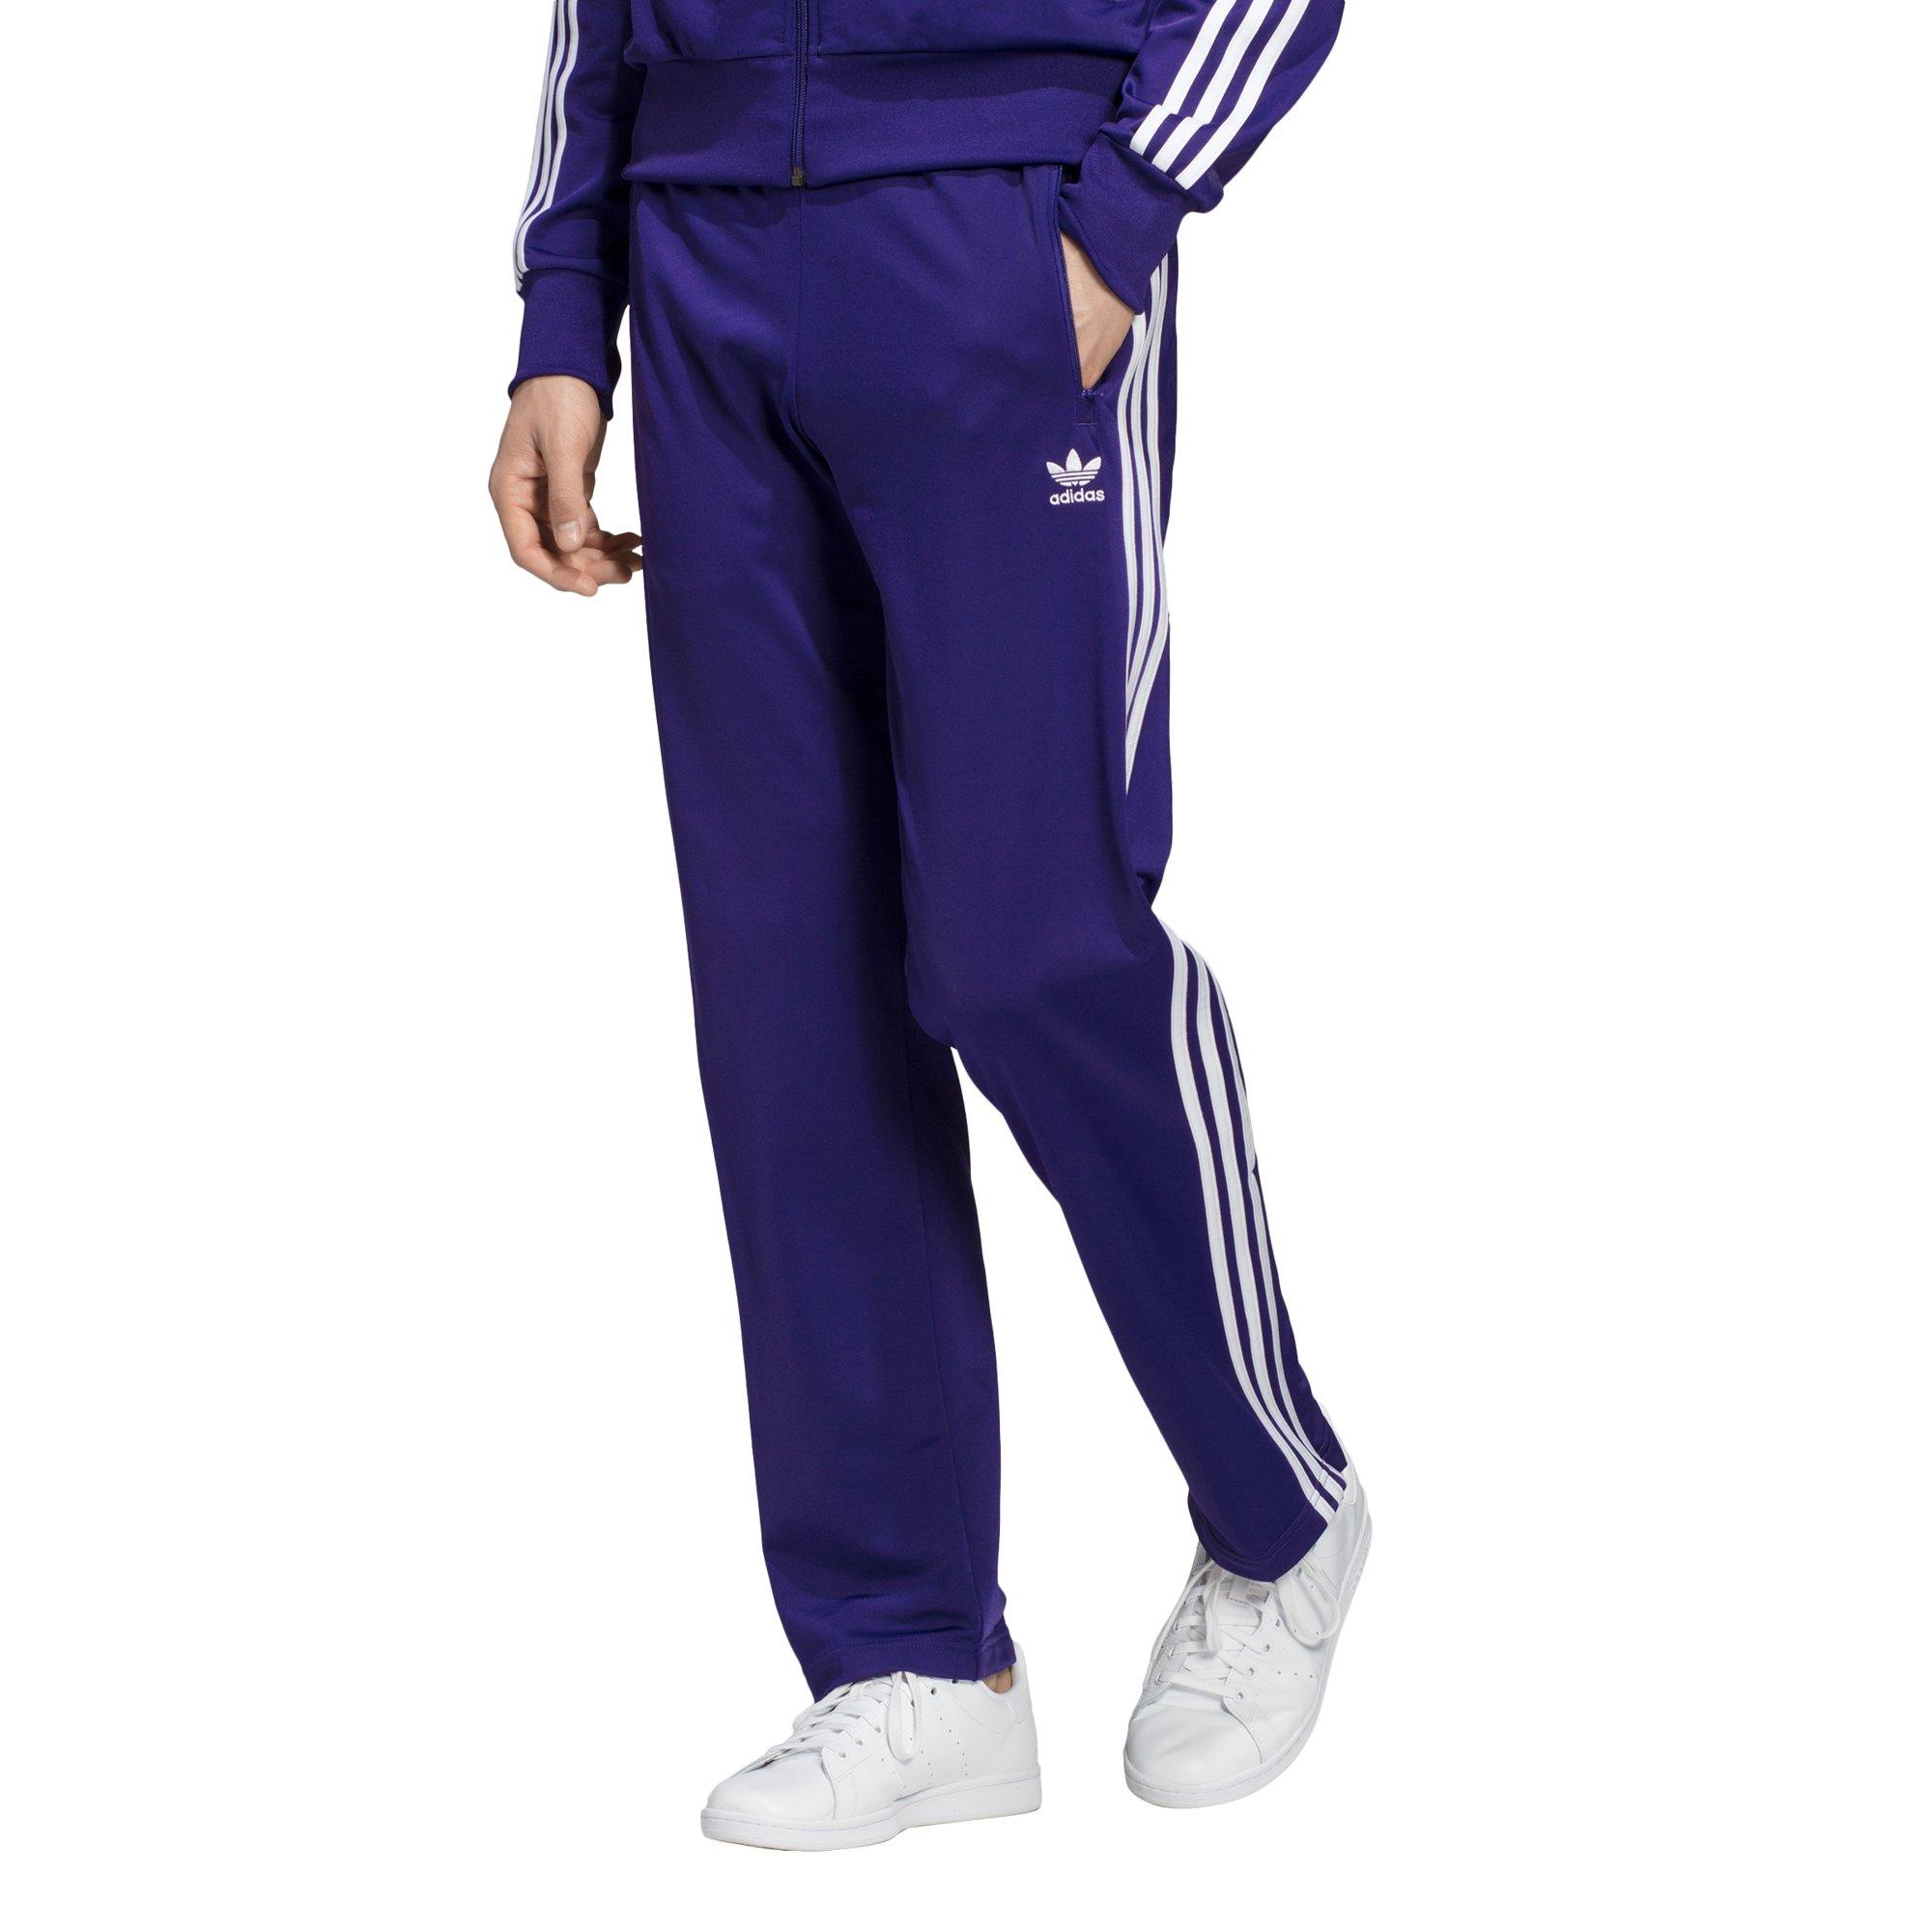 purple adidas track pants